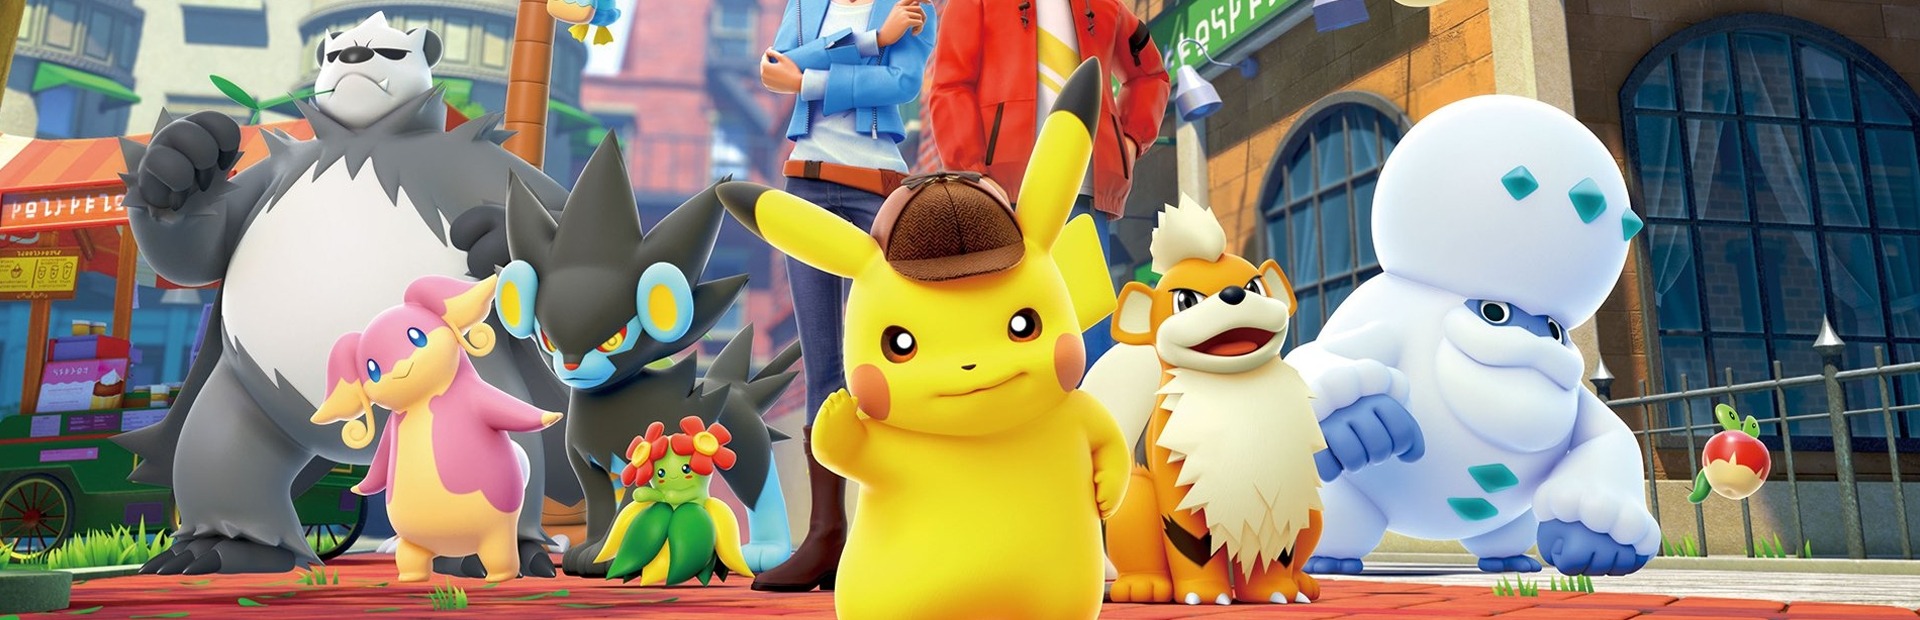 Meisterdetektiv Pikachu kehrt zurück Switch